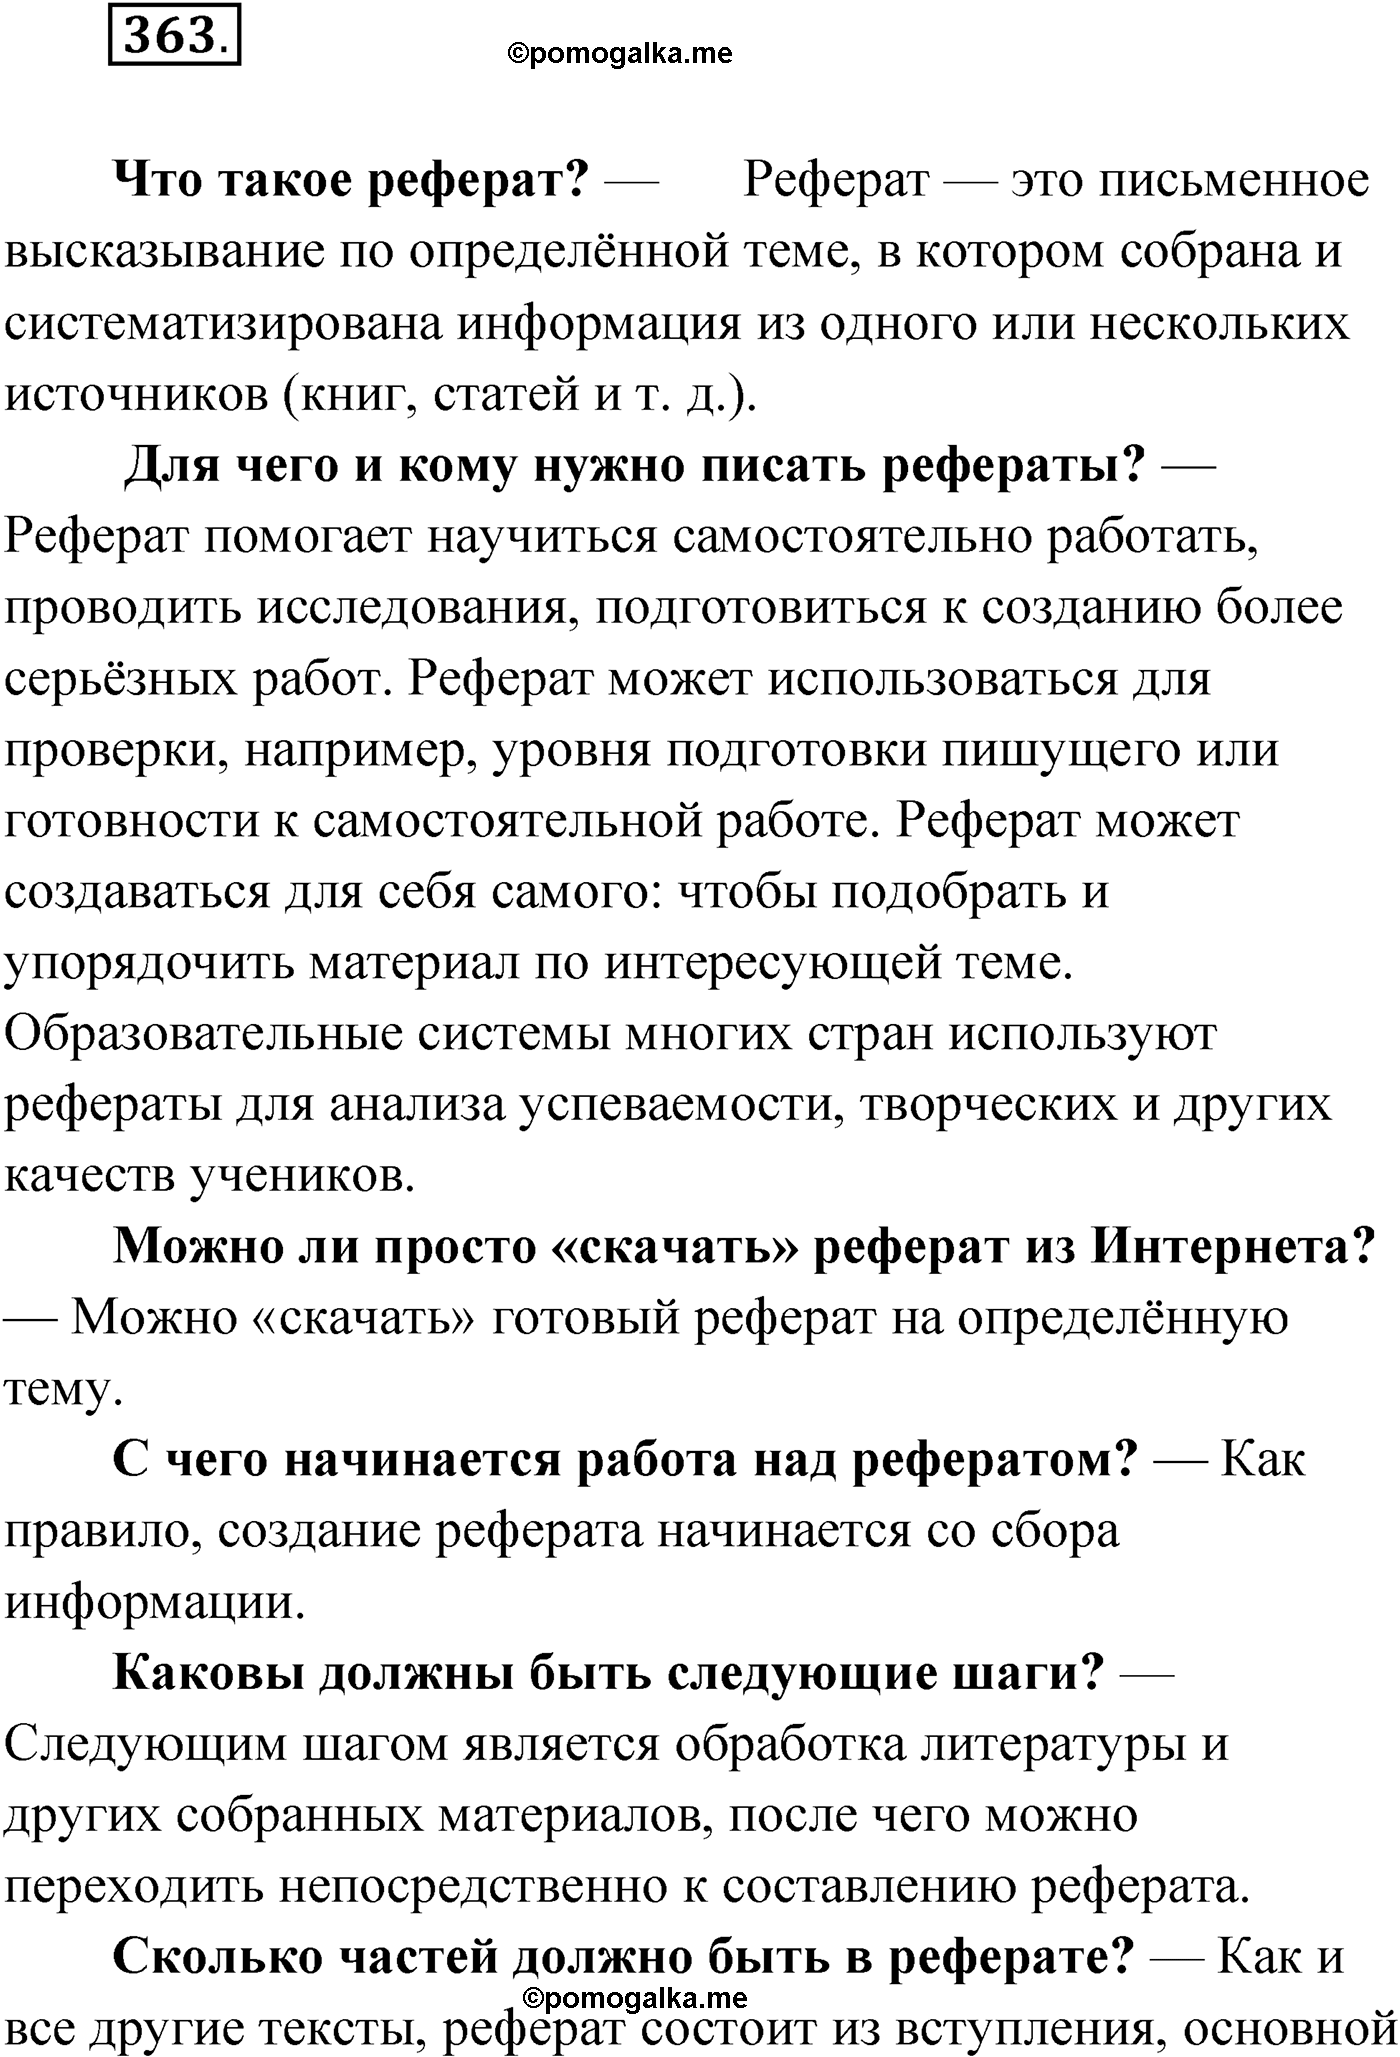 упражнение №363 русский язык 9 класс Мурина 2019 год